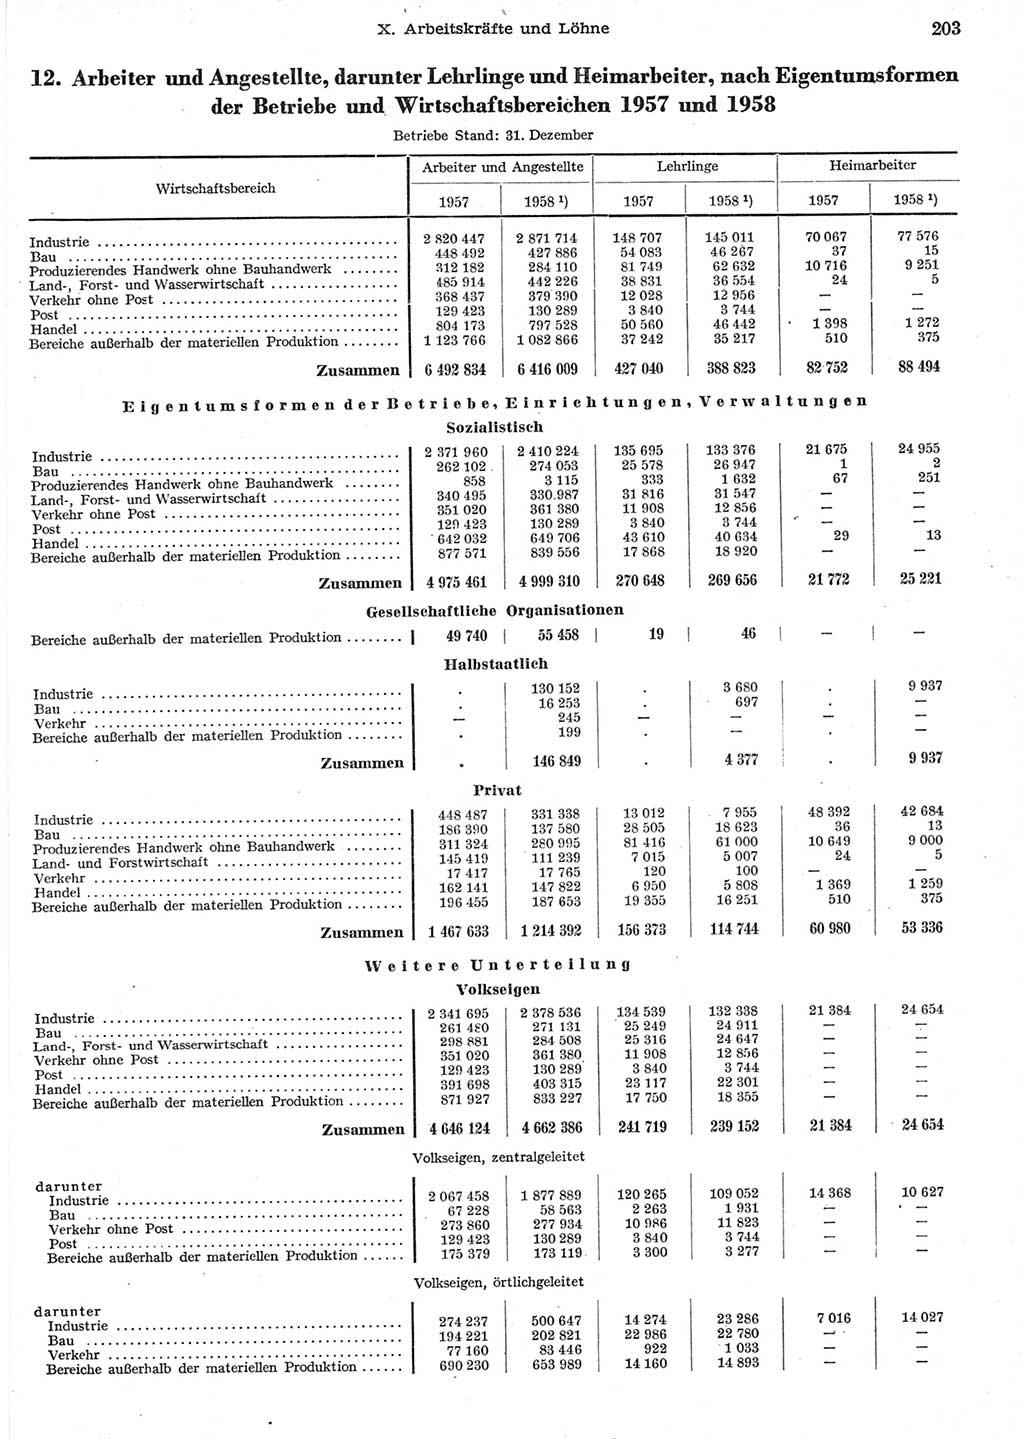 Statistisches Jahrbuch der Deutschen Demokratischen Republik (DDR) 1958, Seite 203 (Stat. Jb. DDR 1958, S. 203)